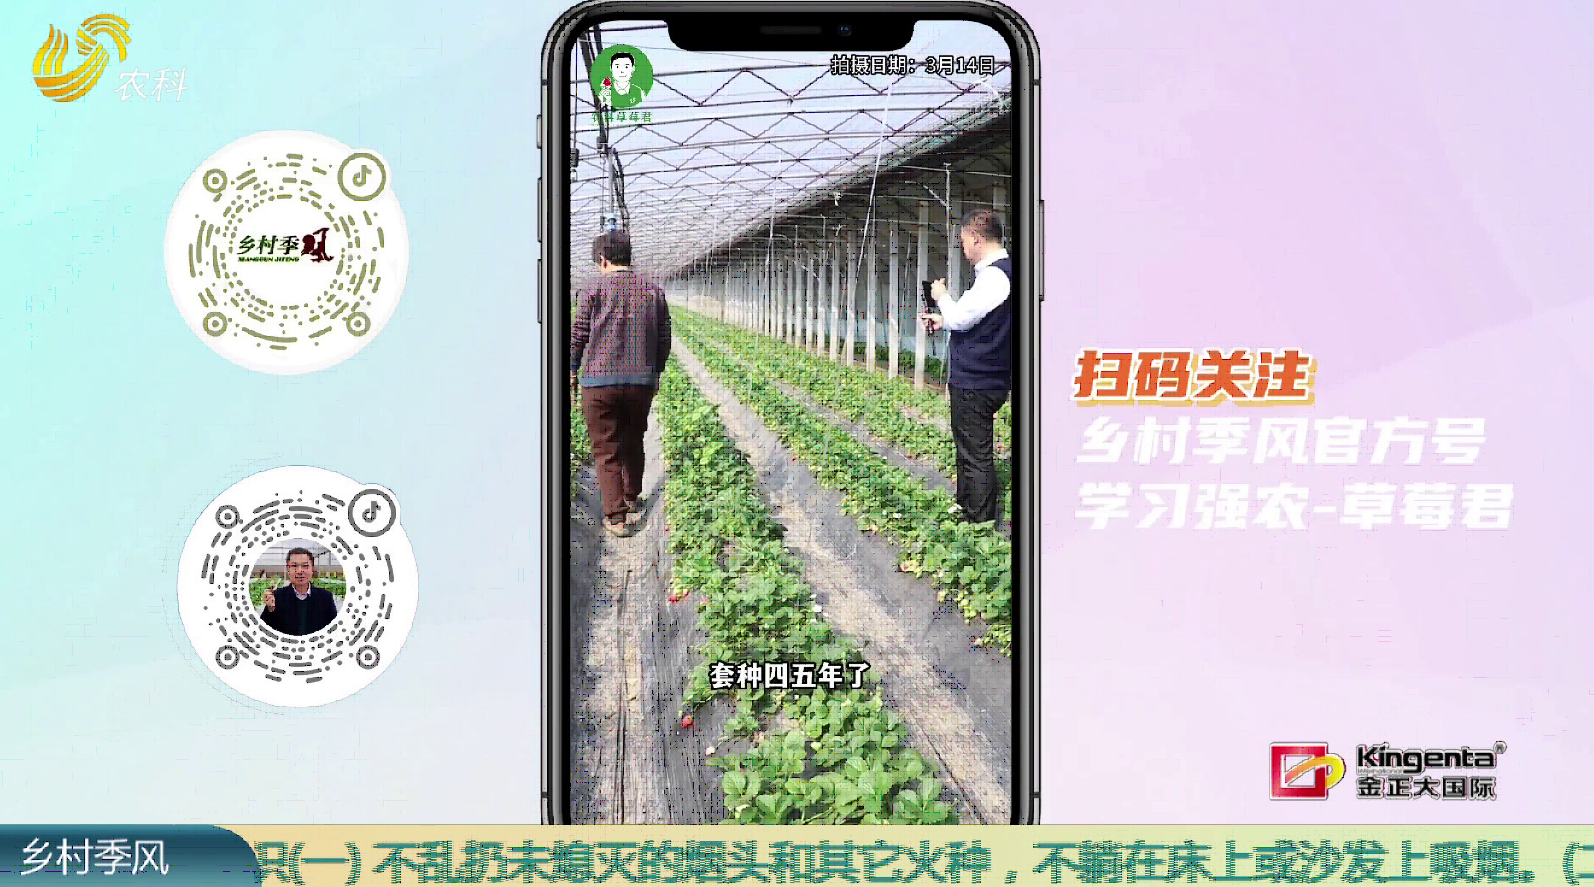 【“草莓君”走基地】草莓套种芸豆 一亩多挣八九千